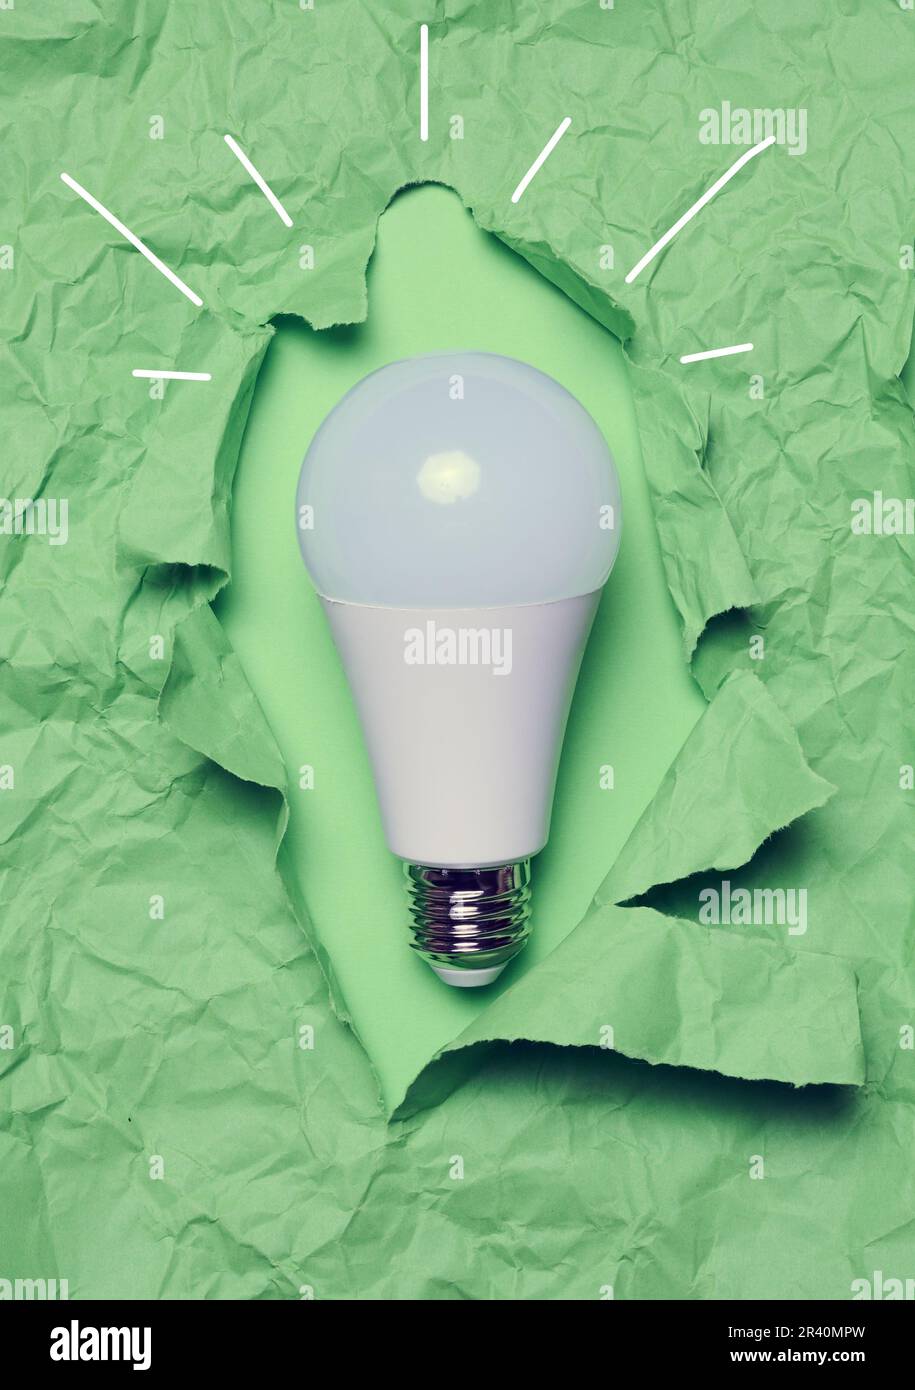 Lampada in vetro bianco su carta verde stropicciata, nuovo concetto di idee creative Foto Stock